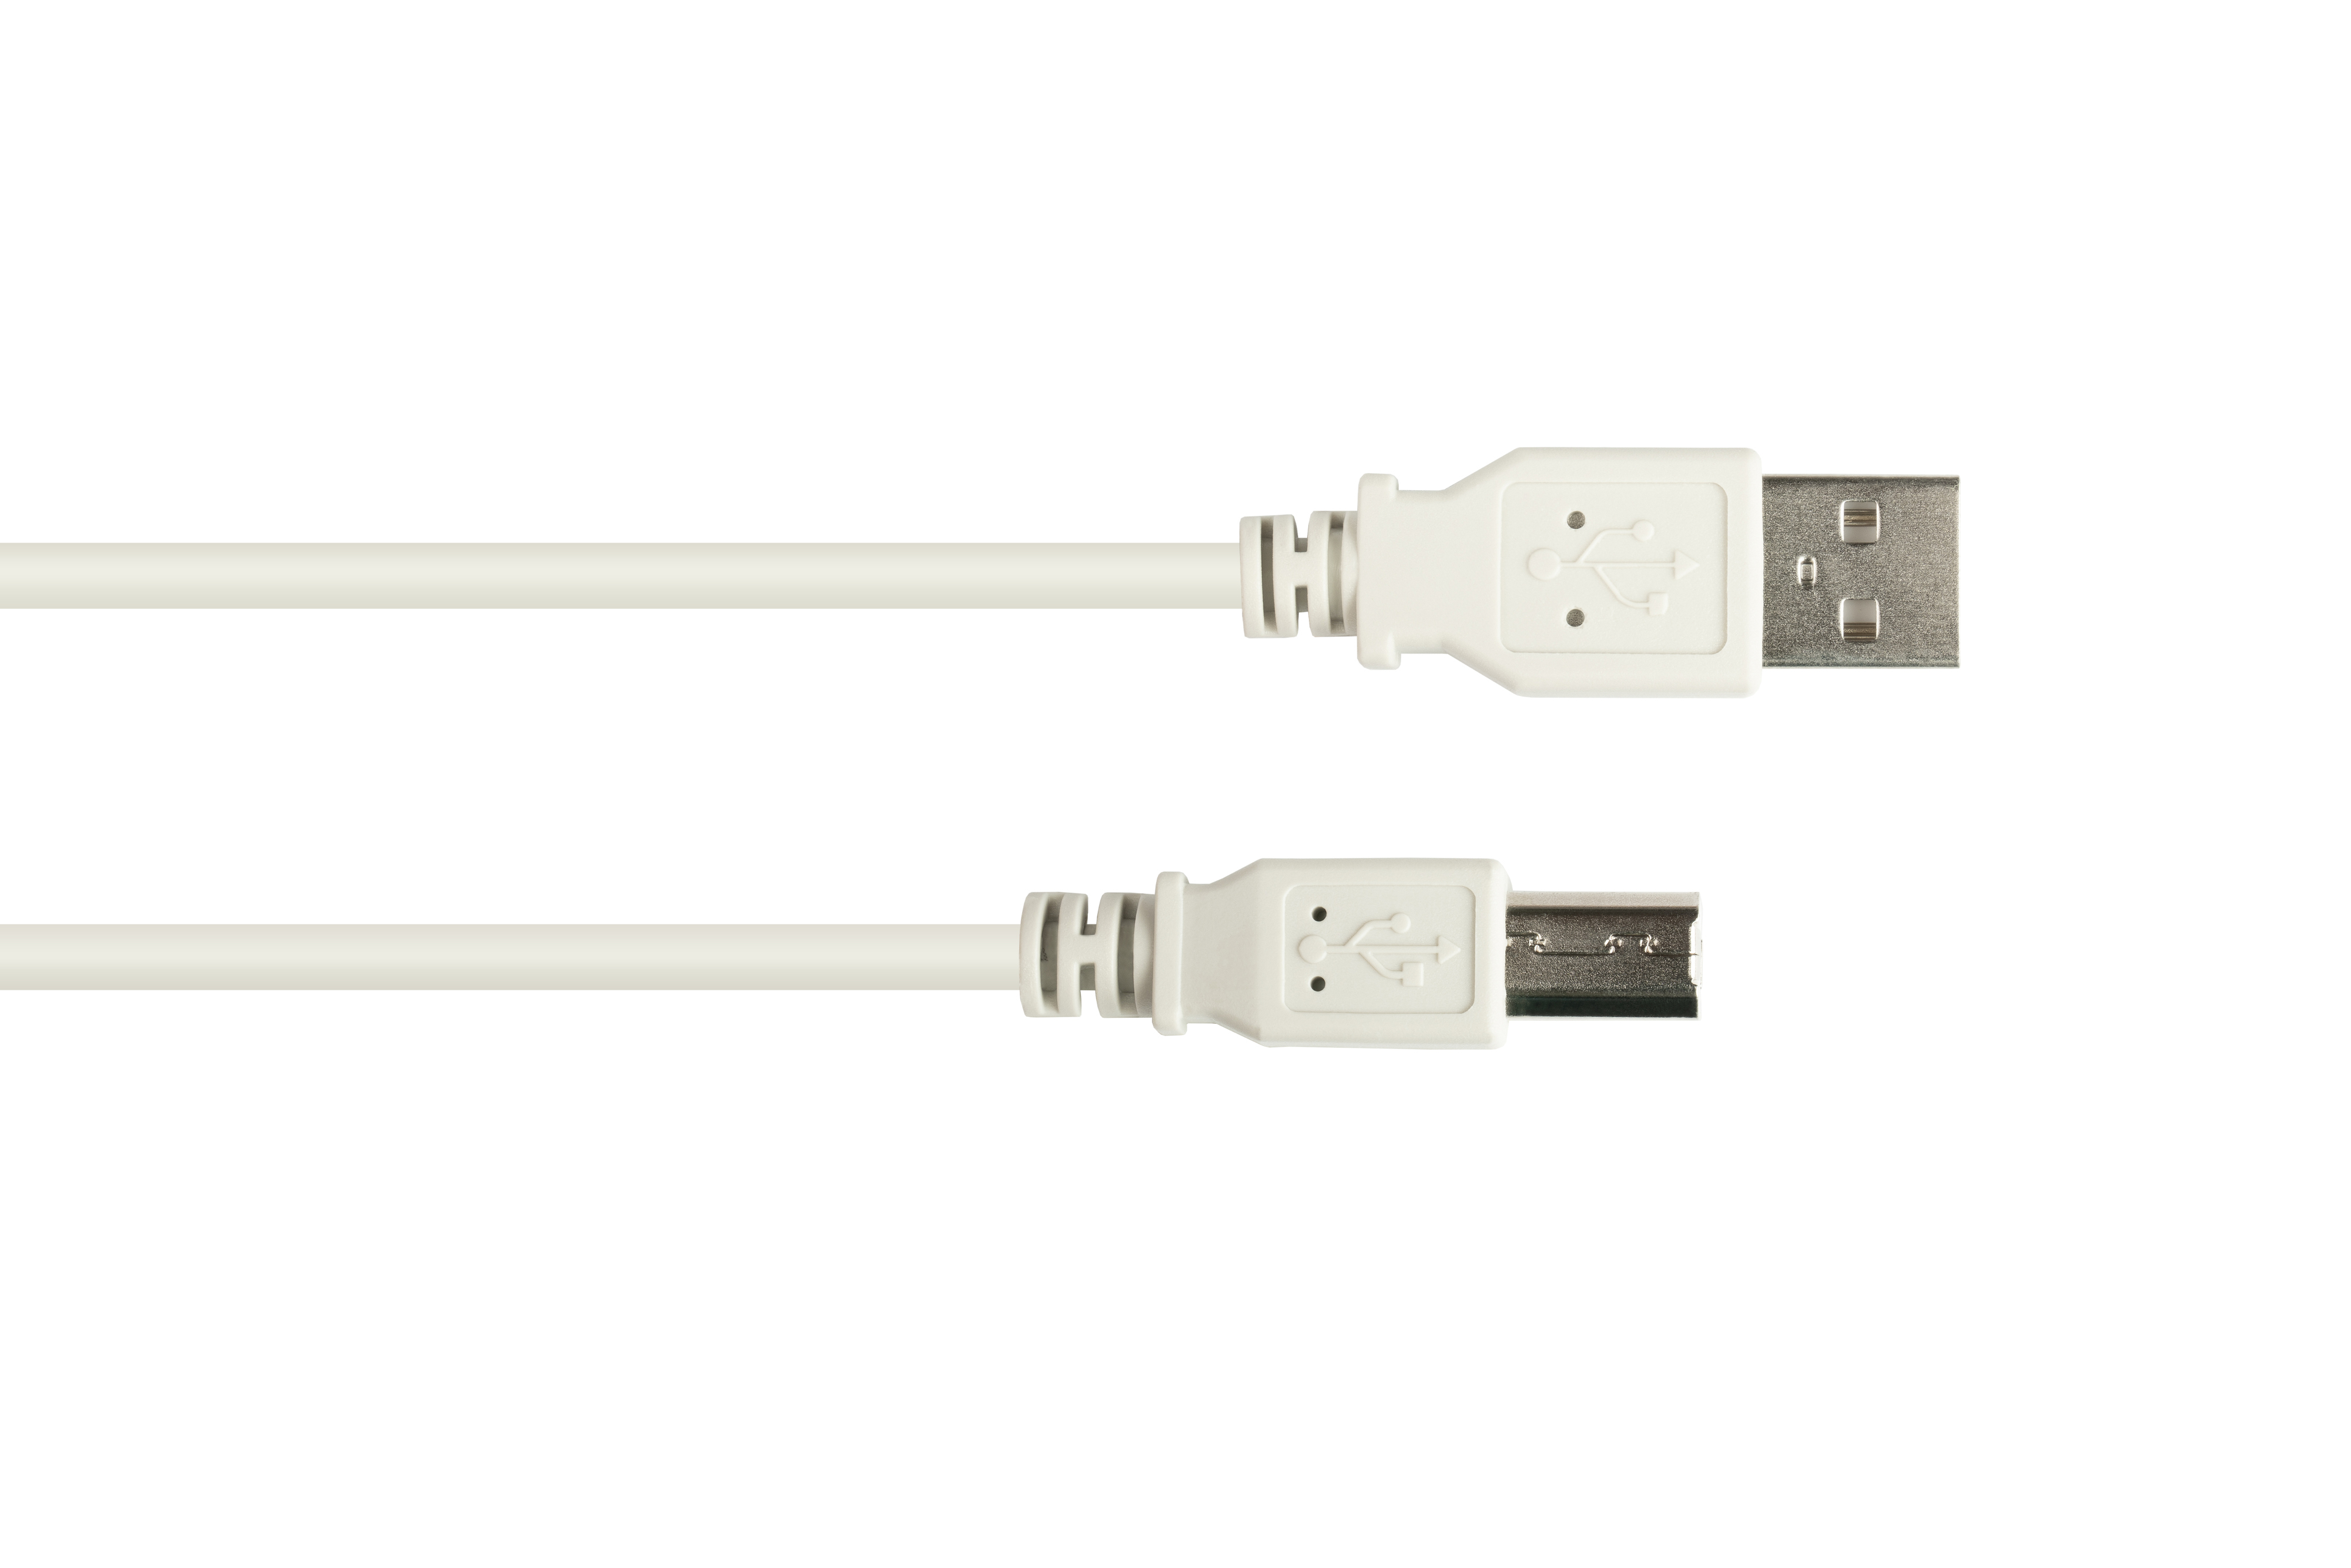 A Stecker Stecker CONNECTIONS B, an grau USB GOOD 2.0 Anschlusskabel